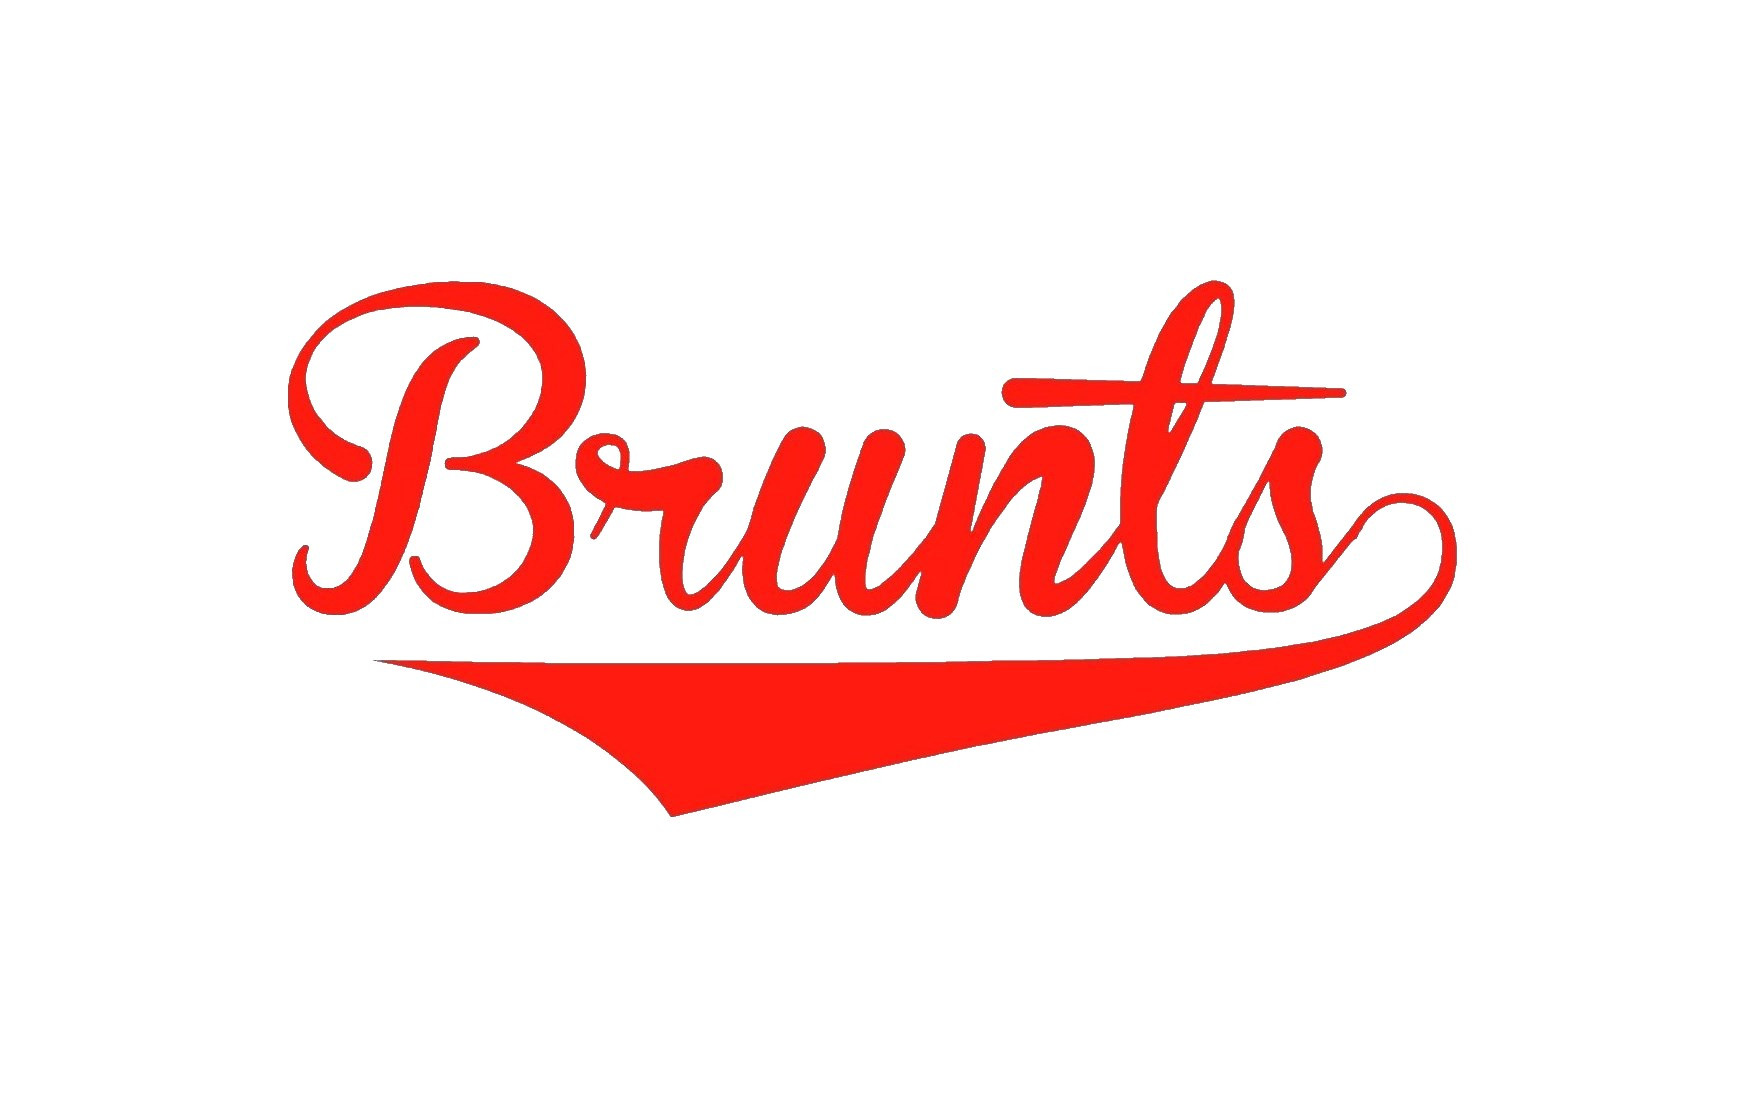 Brunts